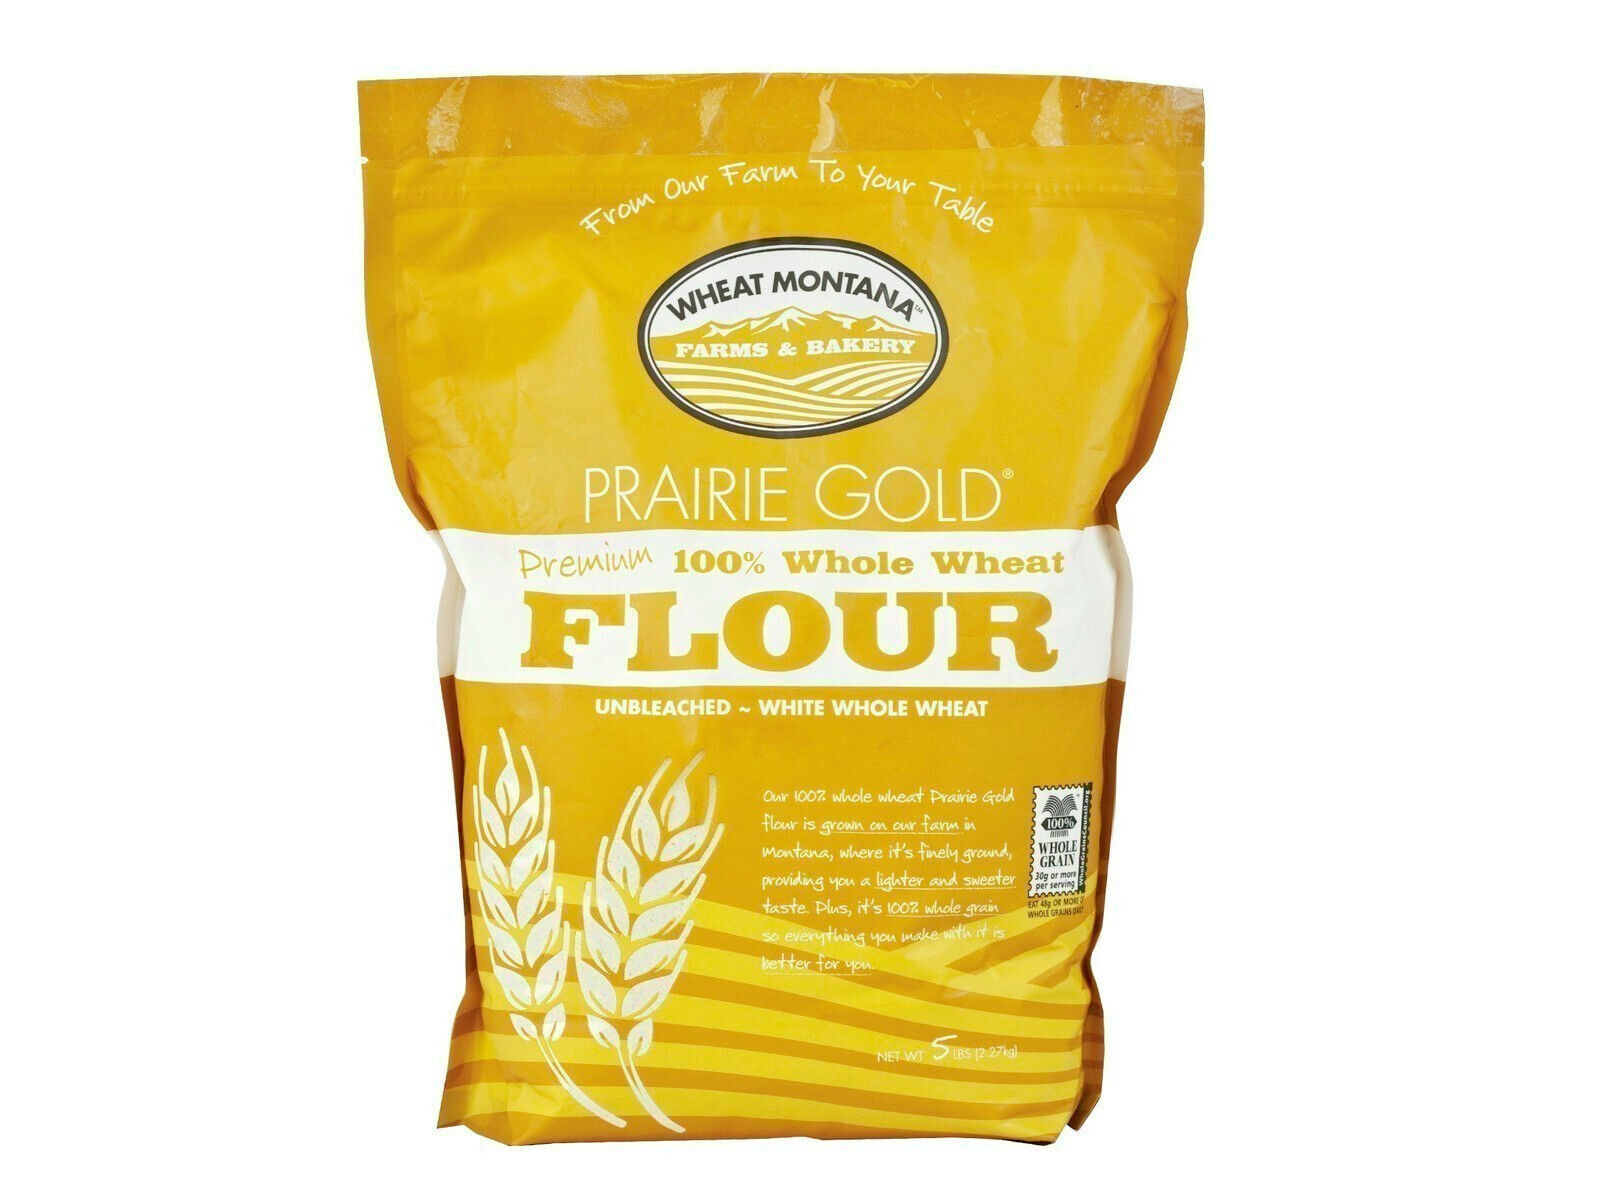 Wheat Montana Prairie Gold 100% White Whole Wheat Premium Flour - $25.69 - $40.54